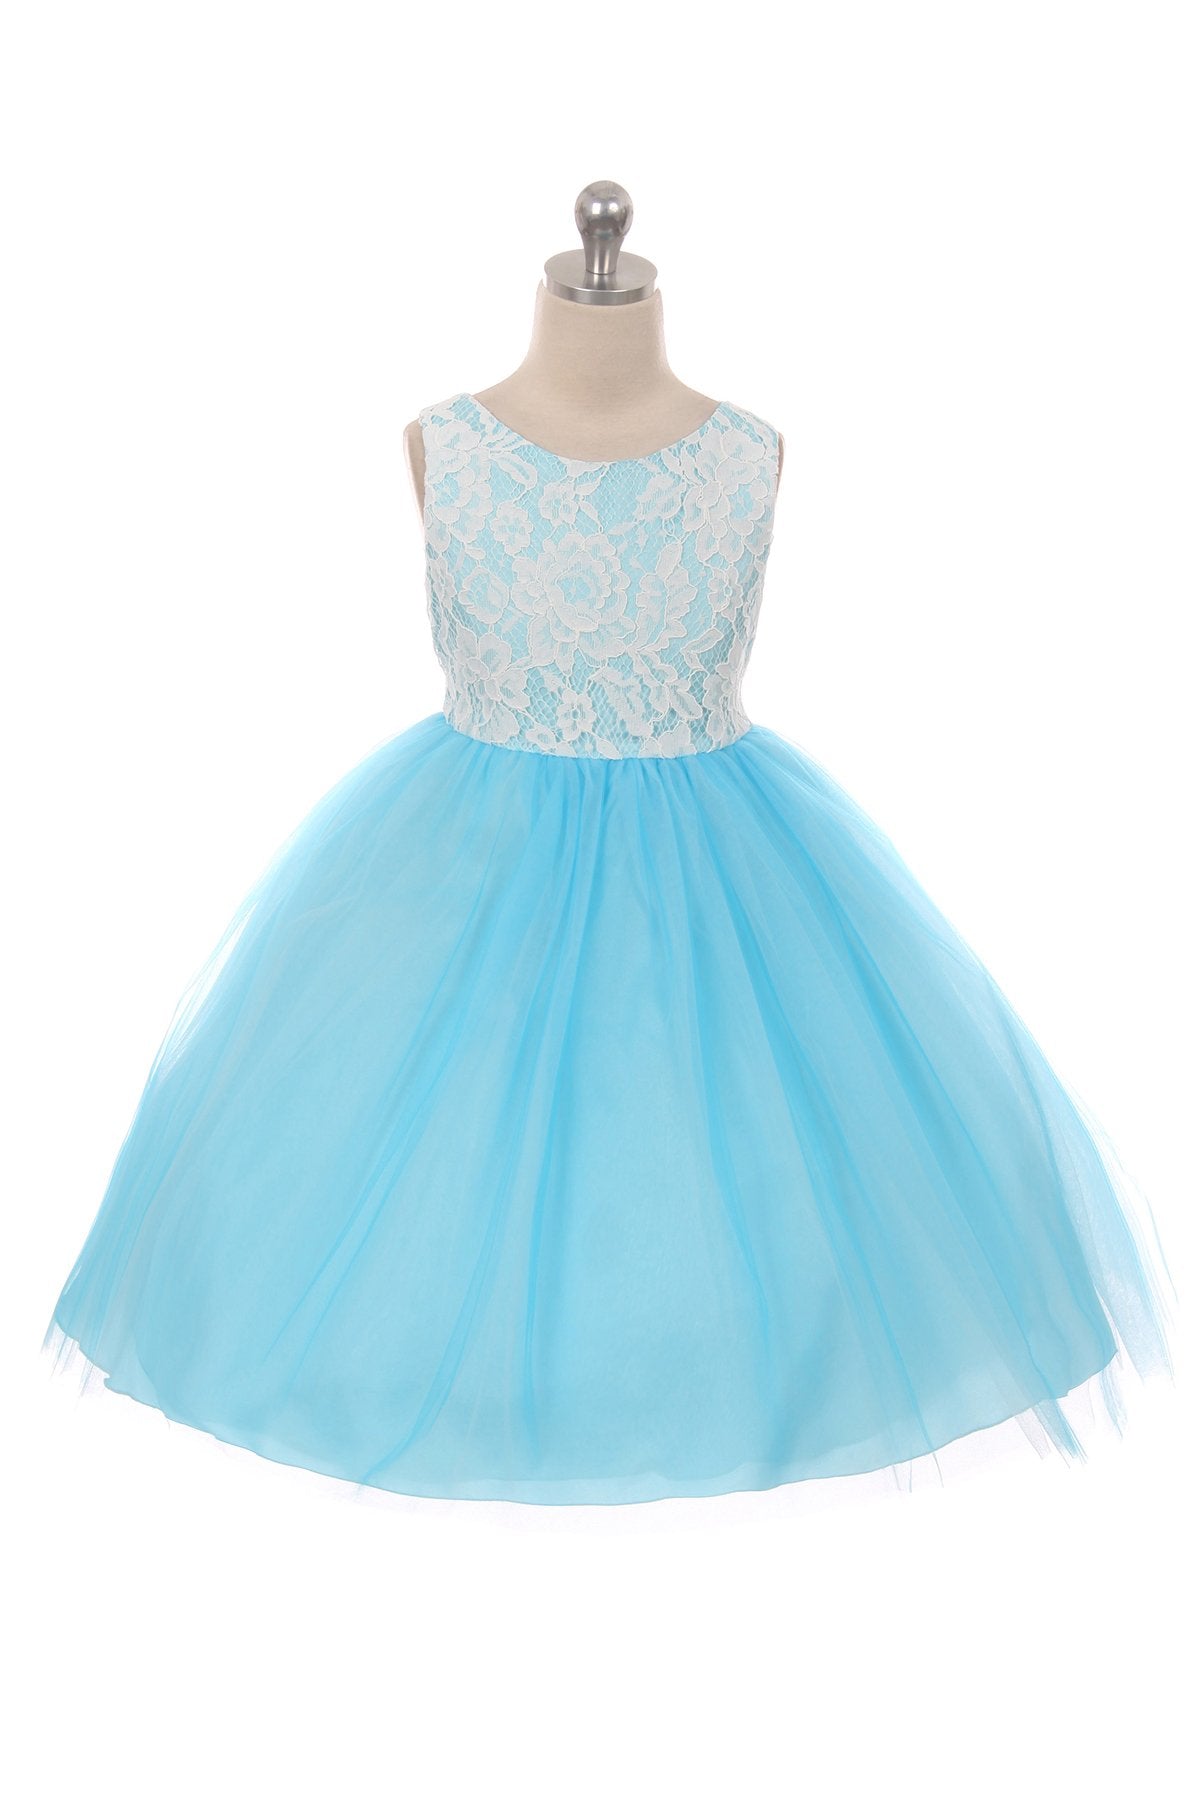 Dress - Lace Illusion Dress